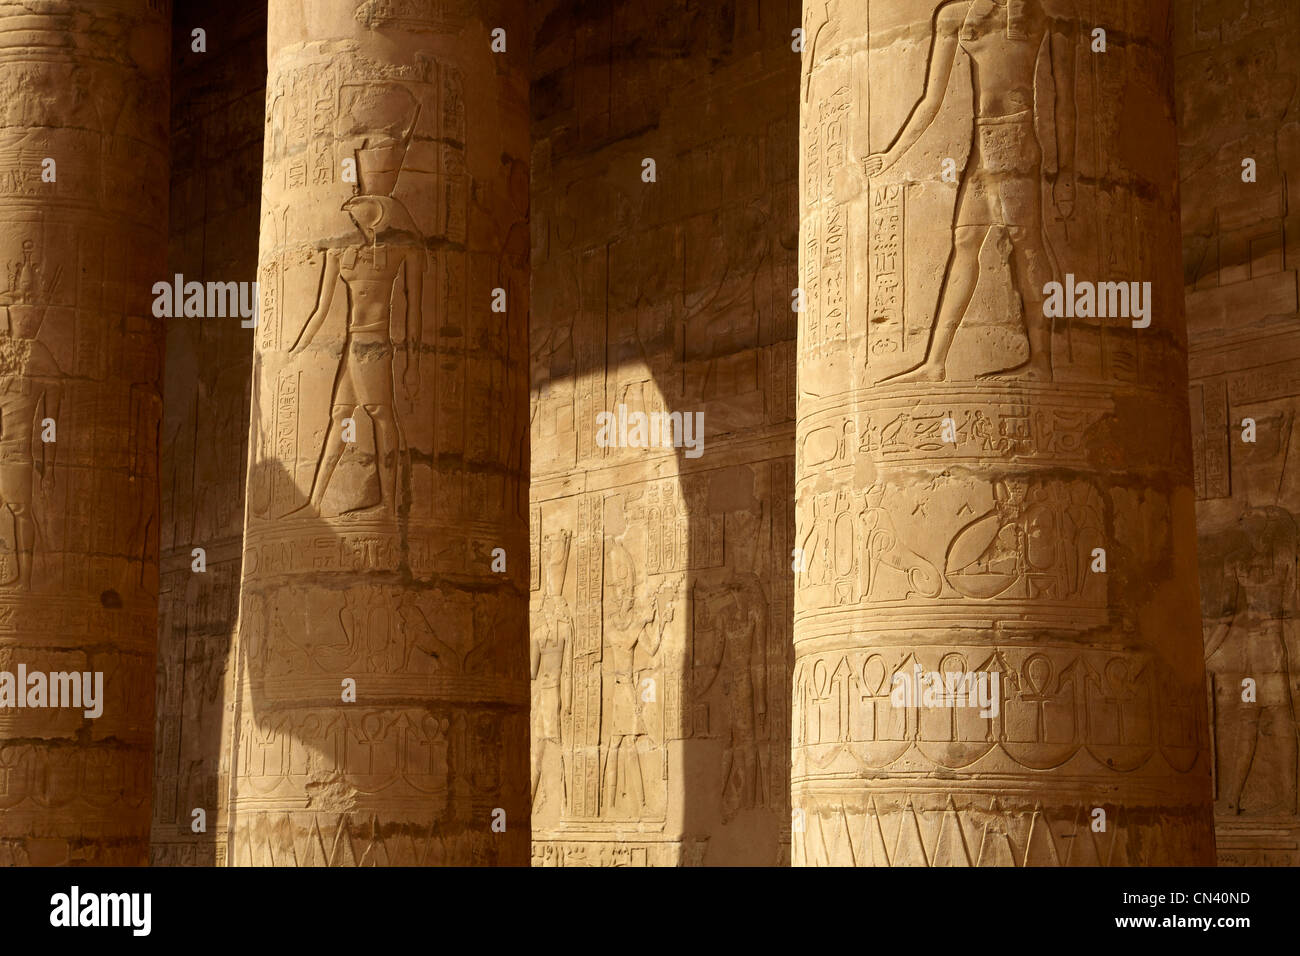 L'Egypte - Edfou, Temple d'Horus, détail de piliers Banque D'Images